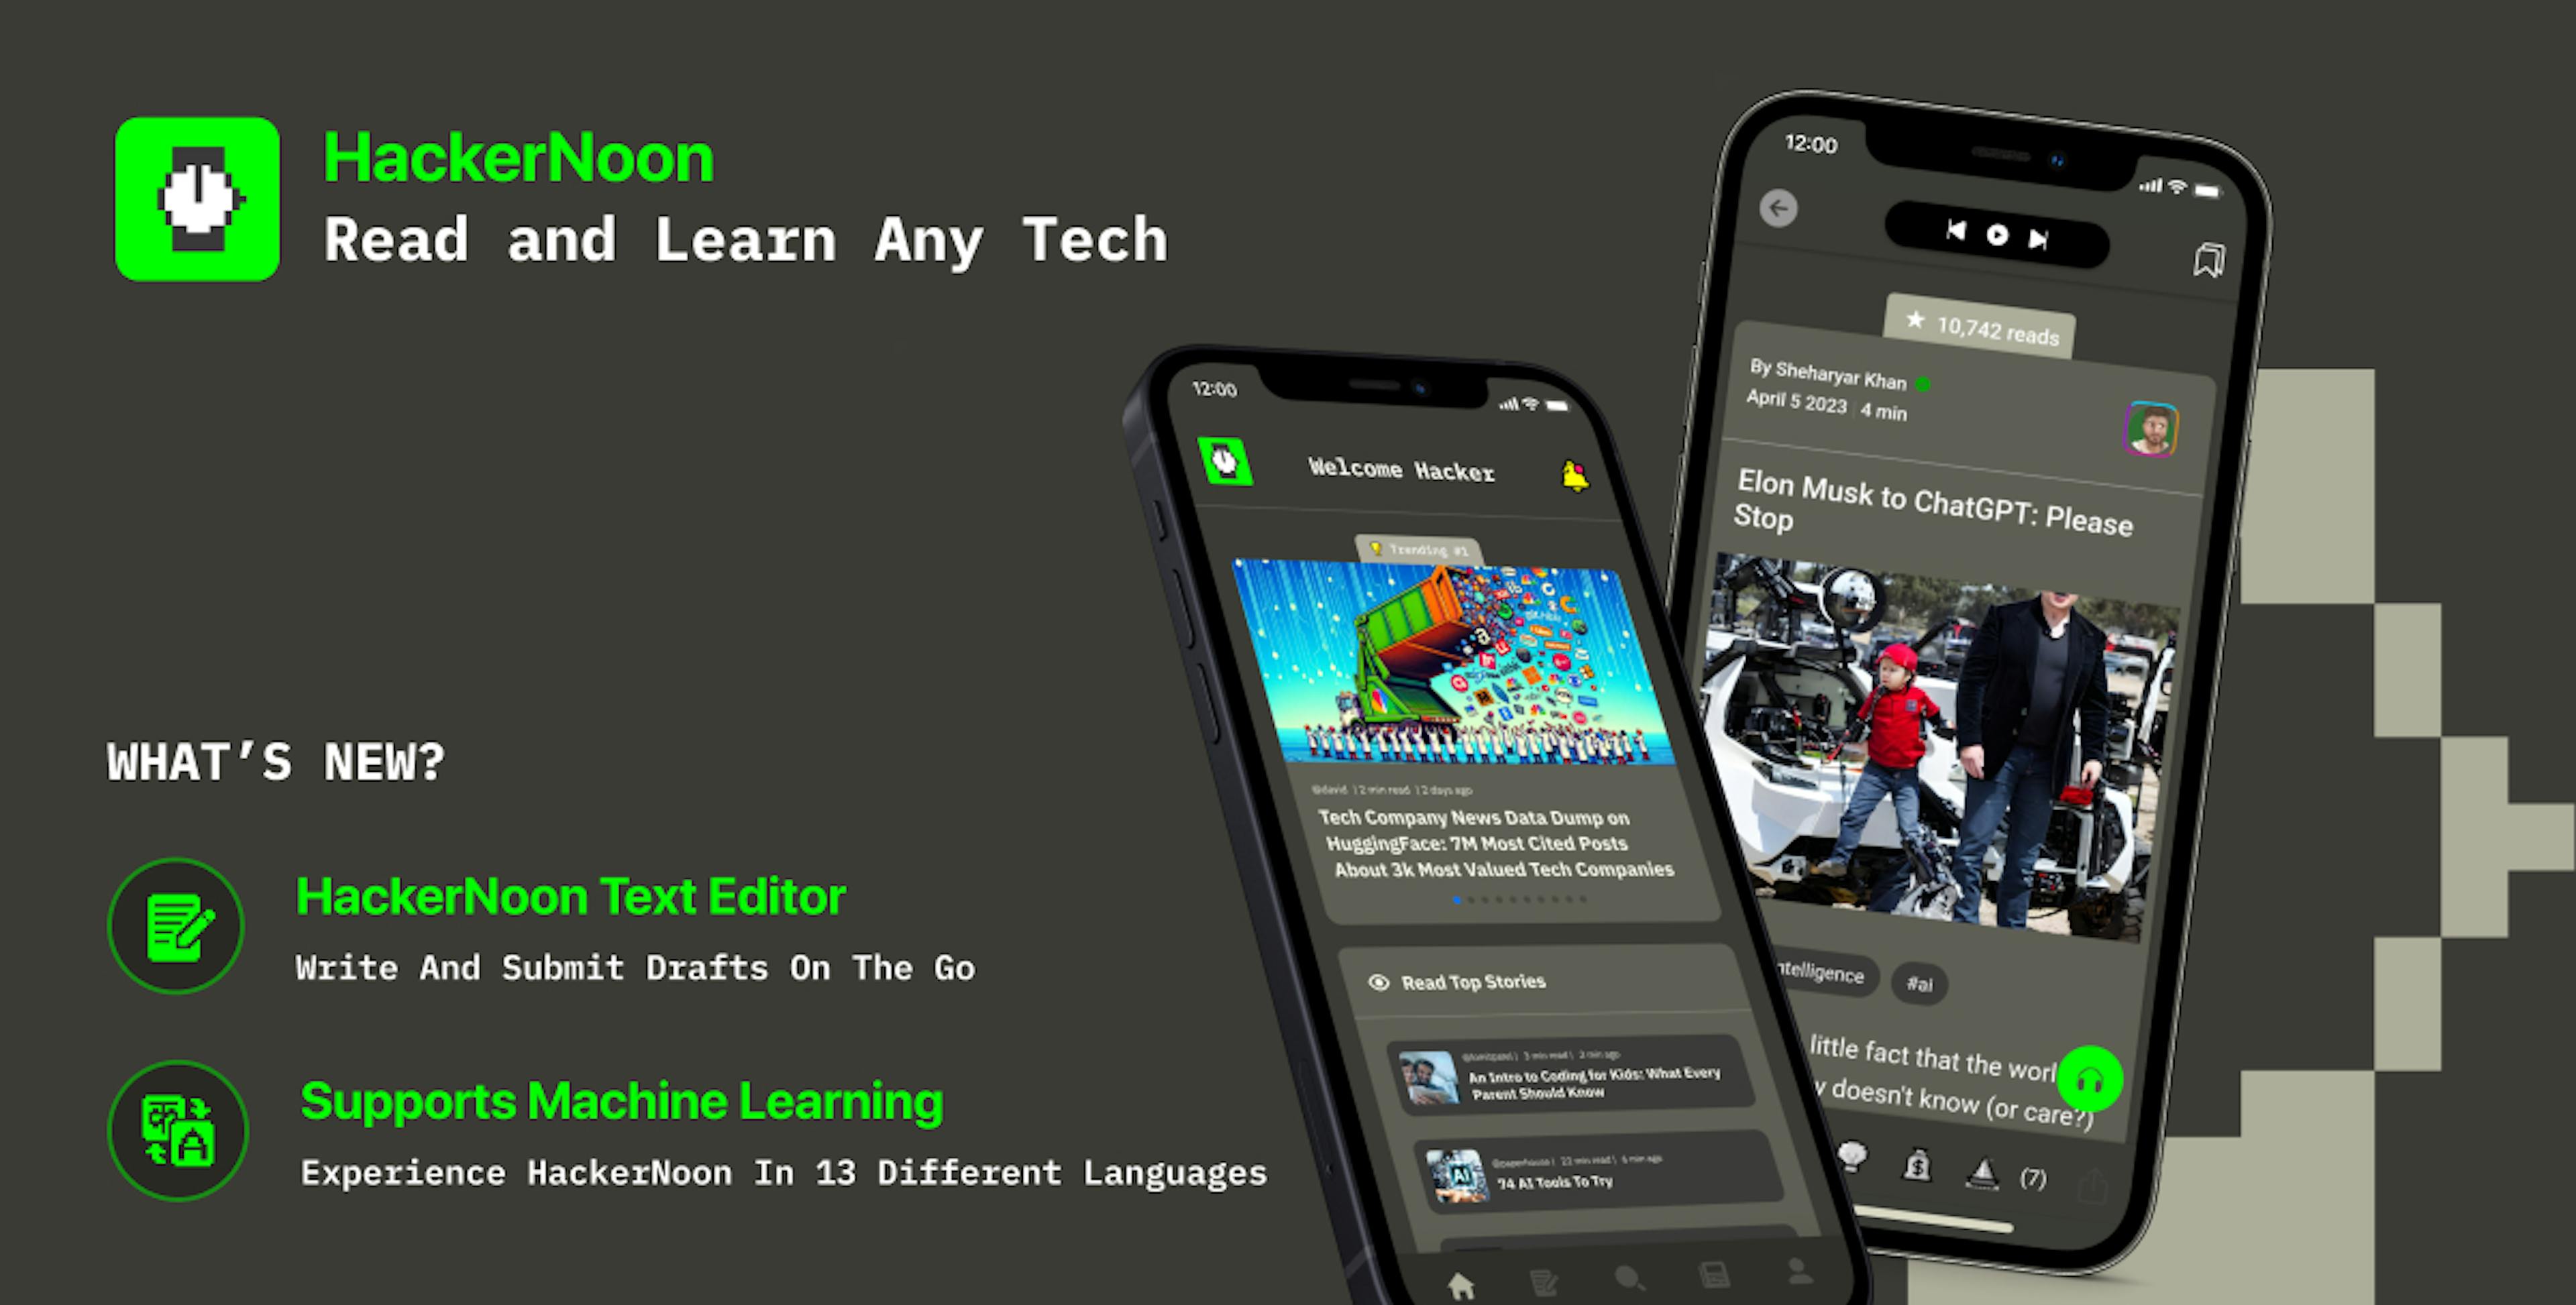 featured image - Ứng dụng di động HackerNoon hiện hỗ trợ viết trong ứng dụng và tổng cộng 13 ngôn ngữ để đọc Blog công nghệ